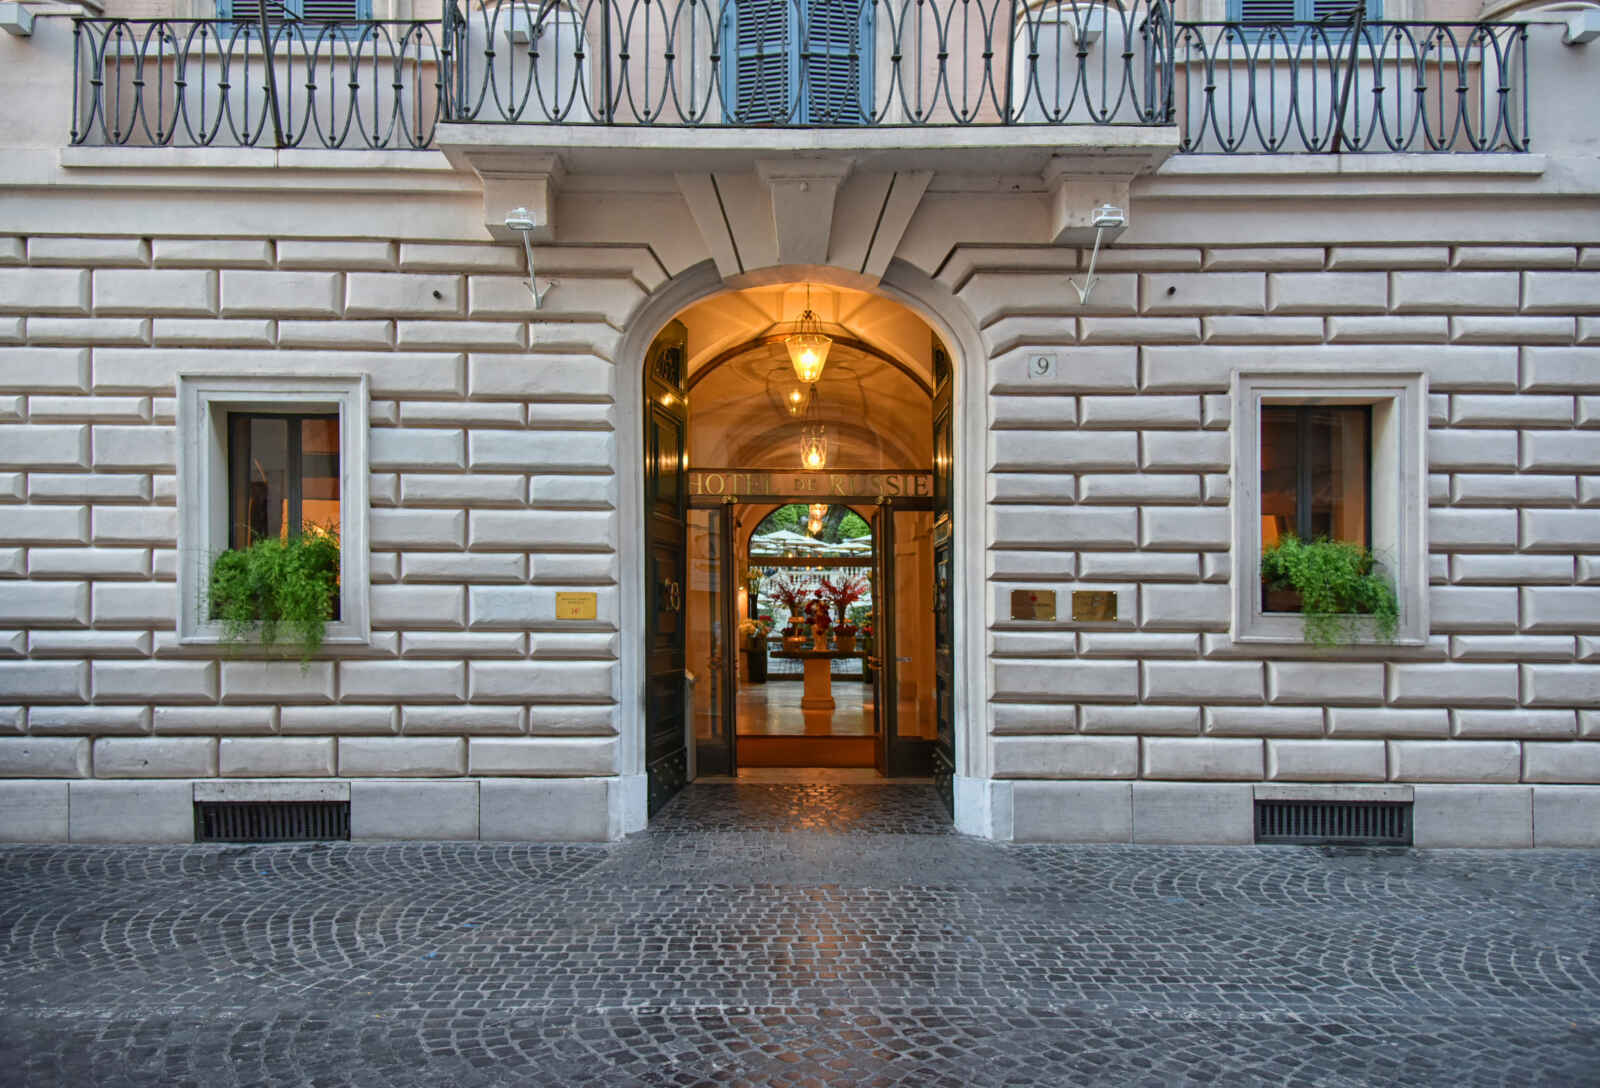 Italie - Rome - Hôtel de Russie 5*